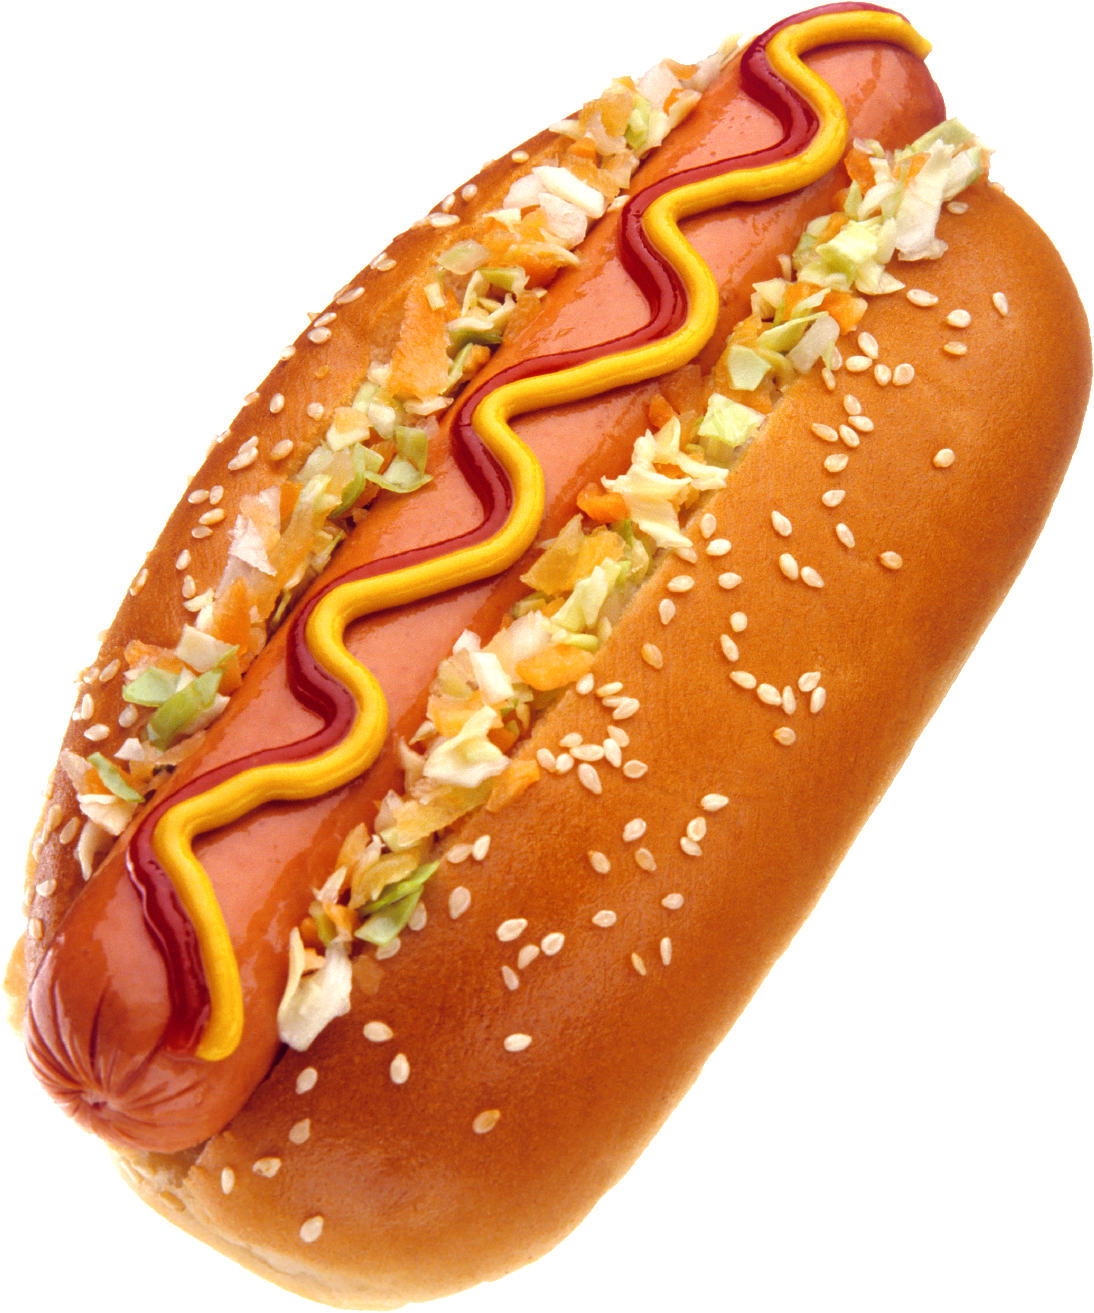 hot dog, Hot Dog, Breakfast P